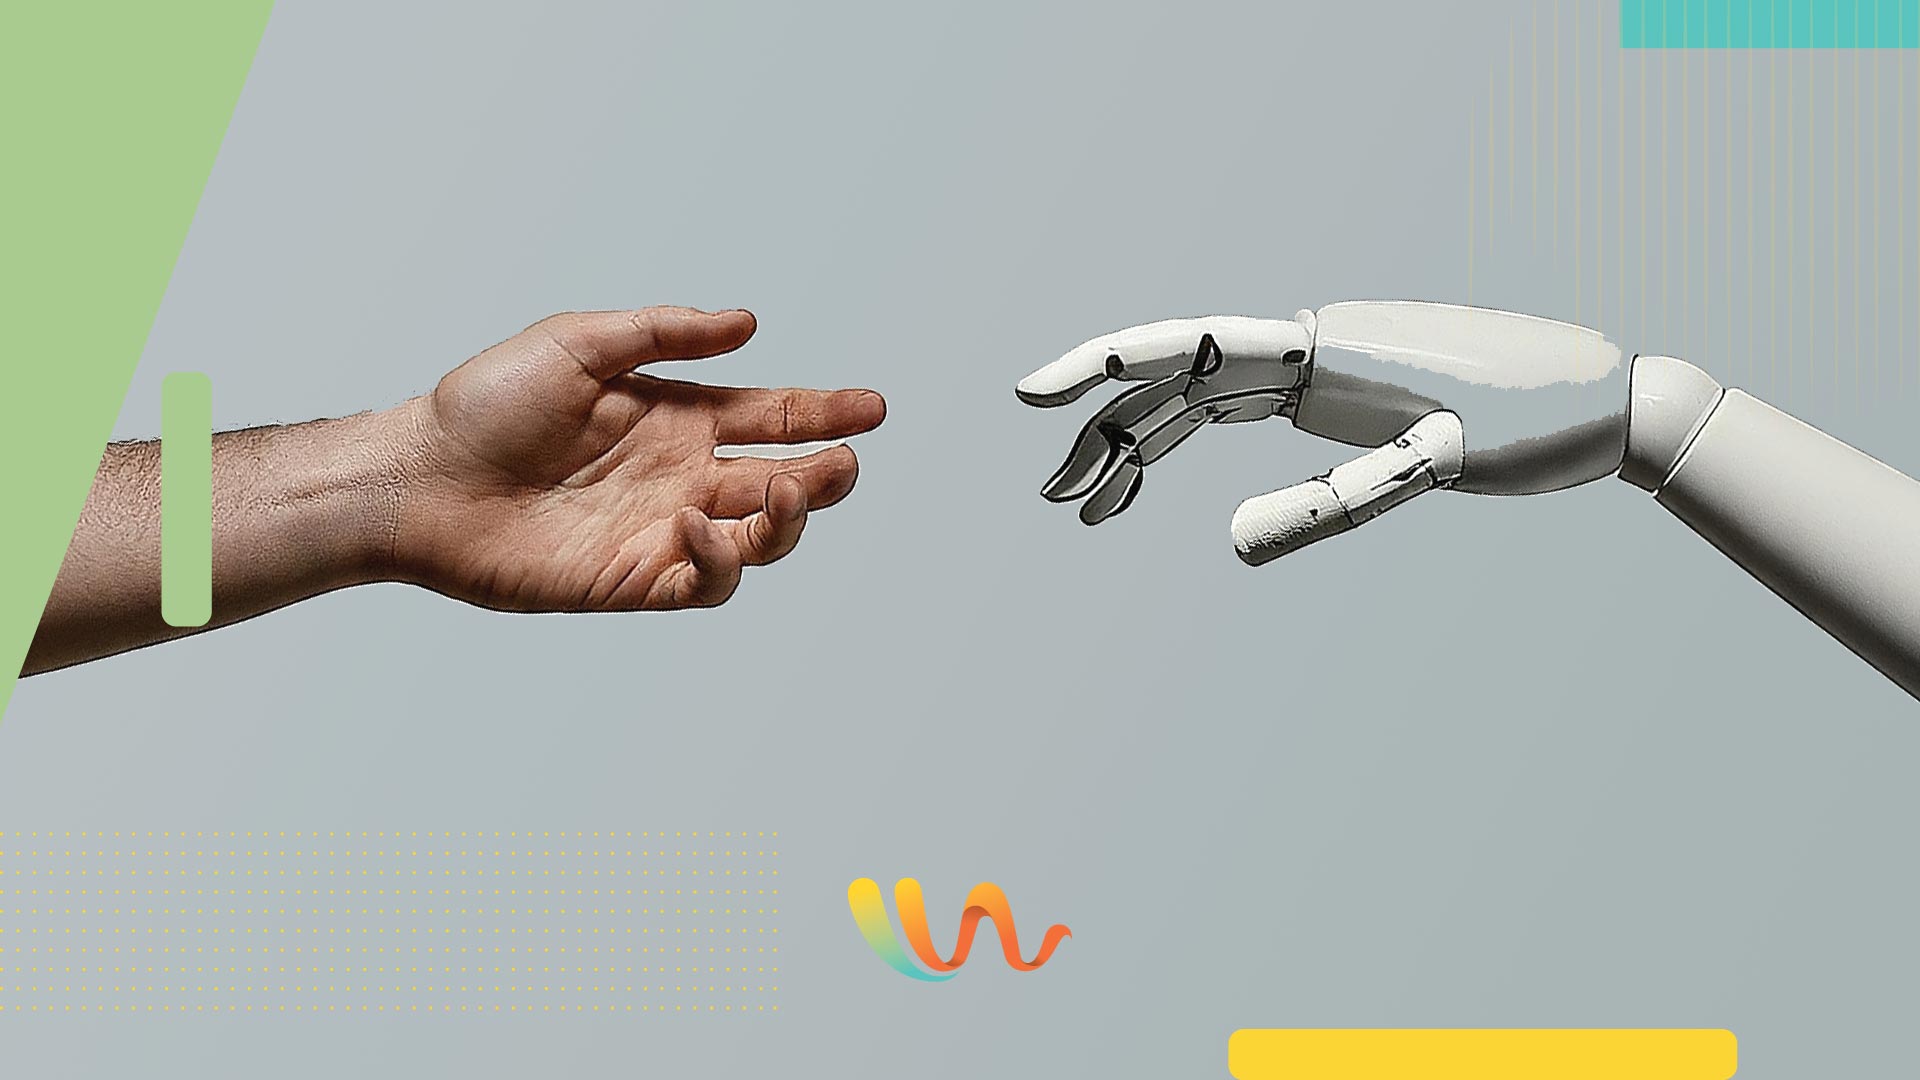 Humanos, máquinas y el poder de la colaboración